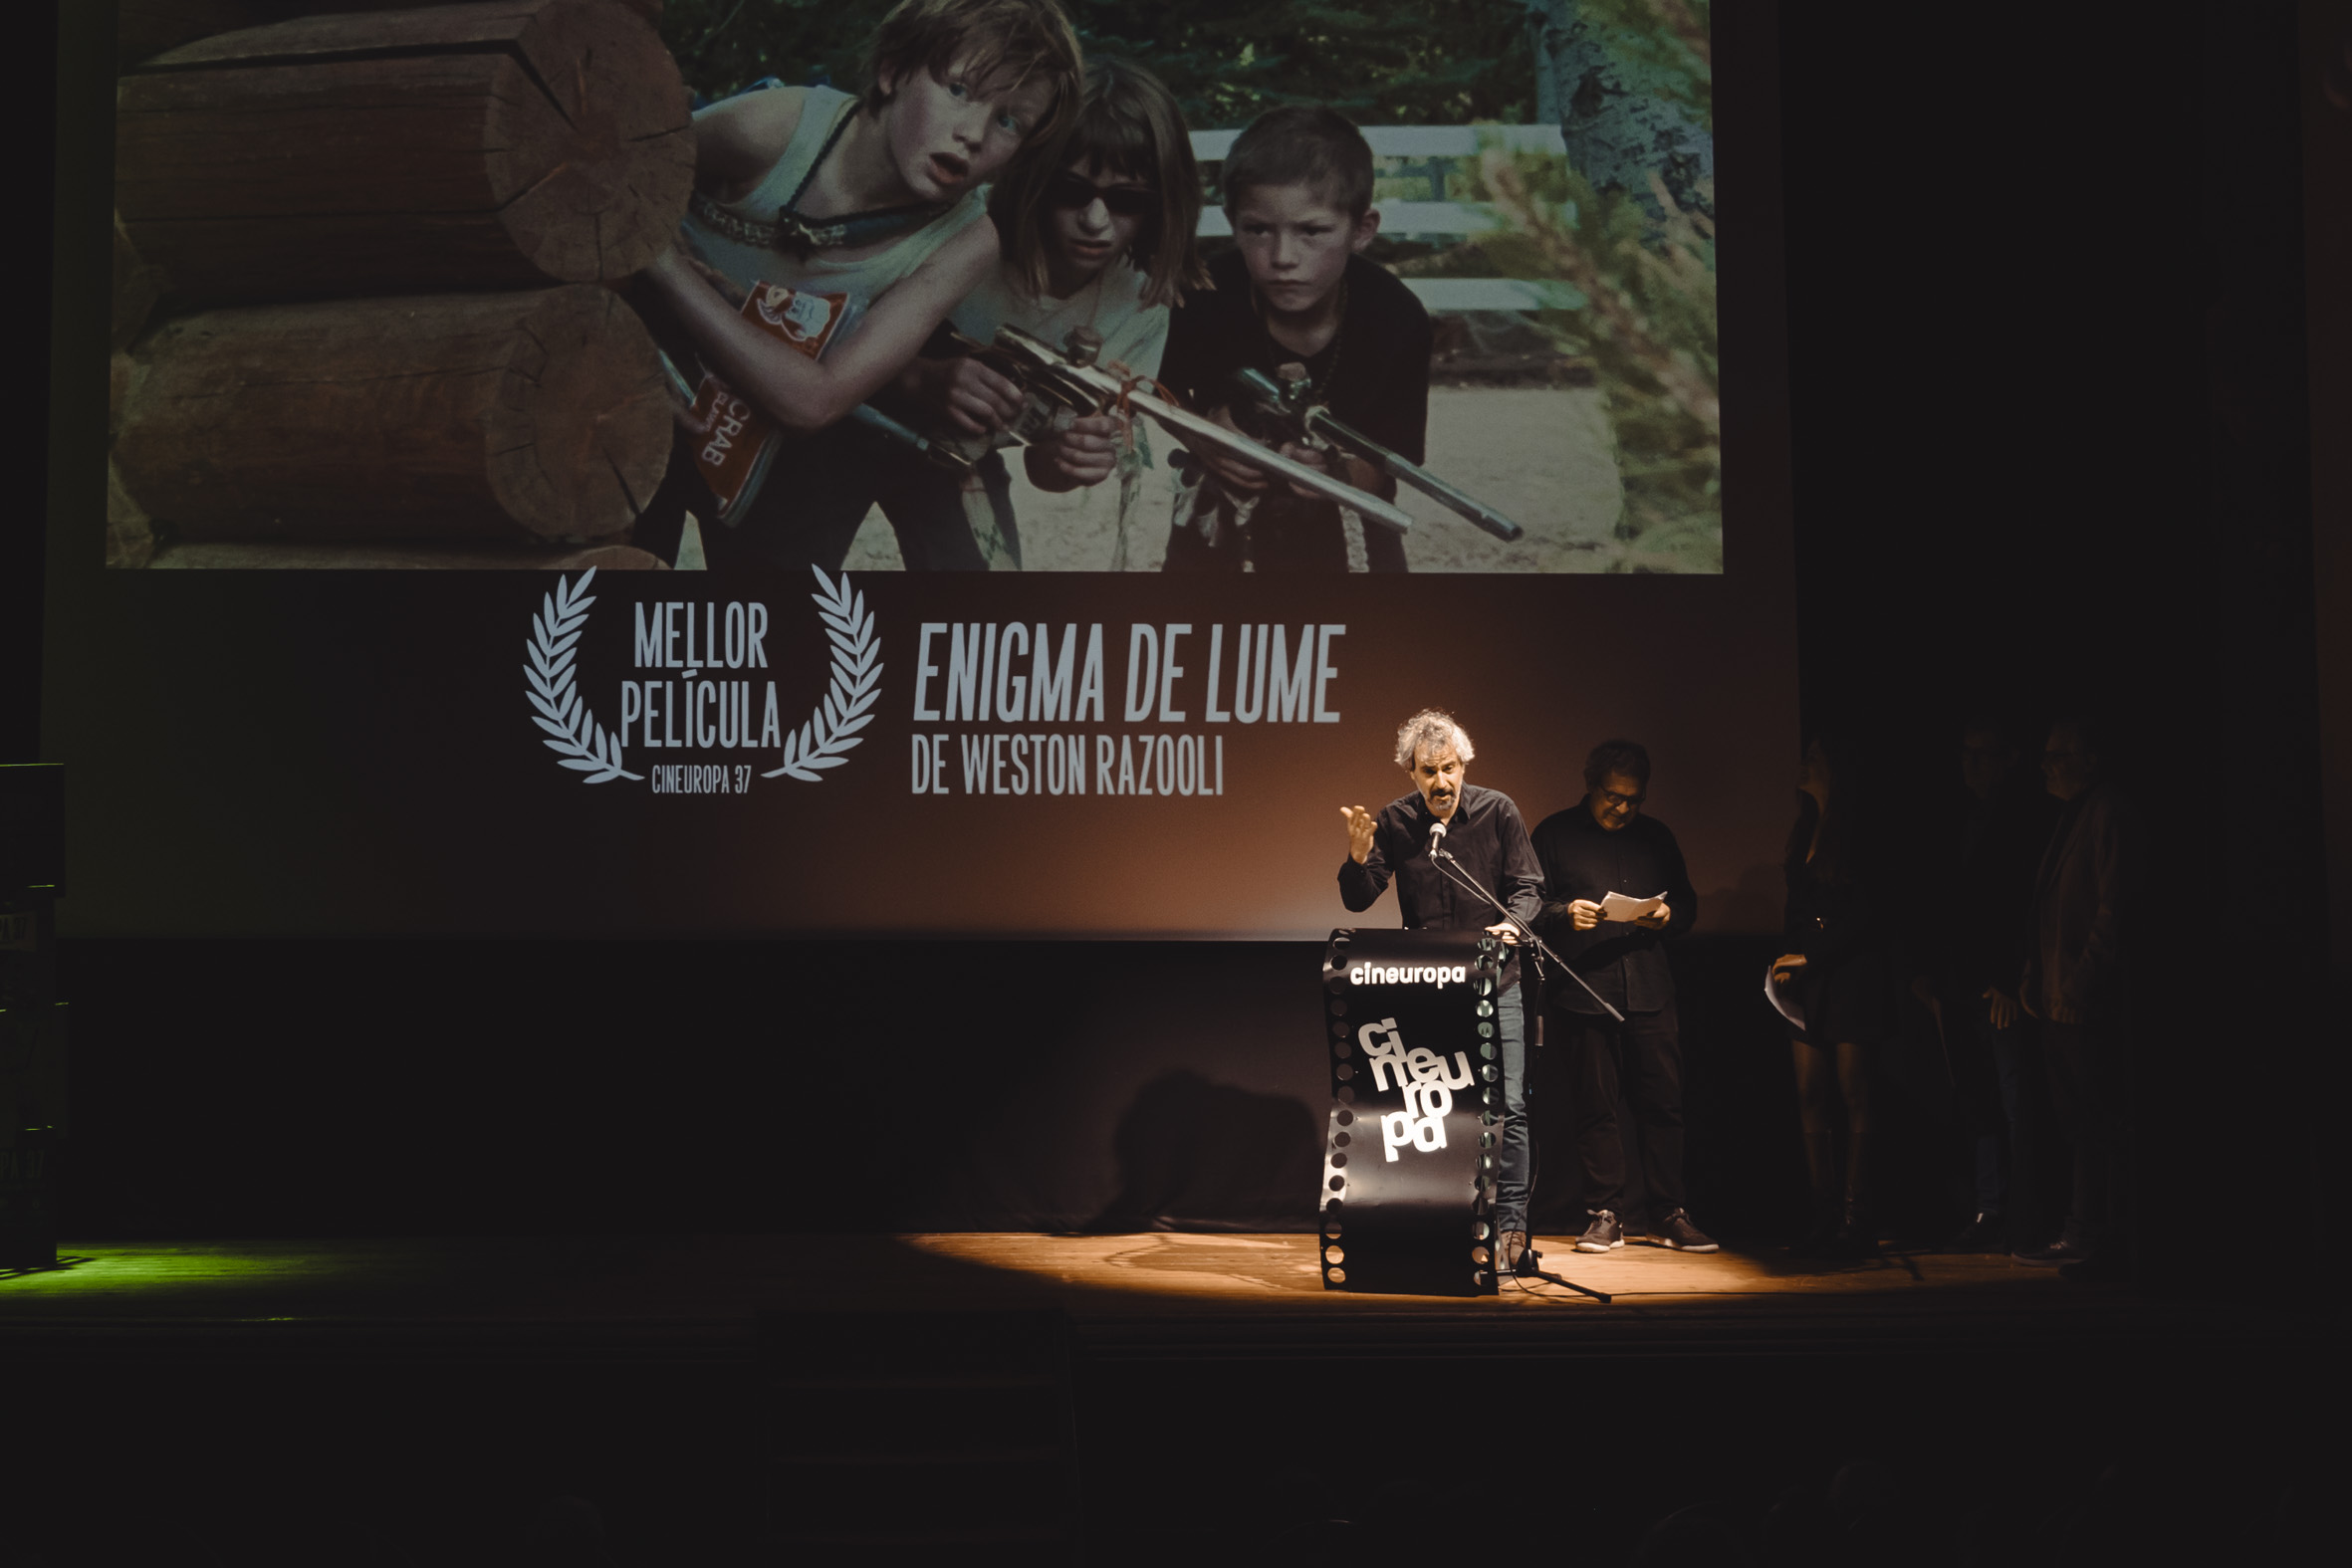 O filme ‘Enigma de lume’ gaña a 37ª edición de Cineuropa